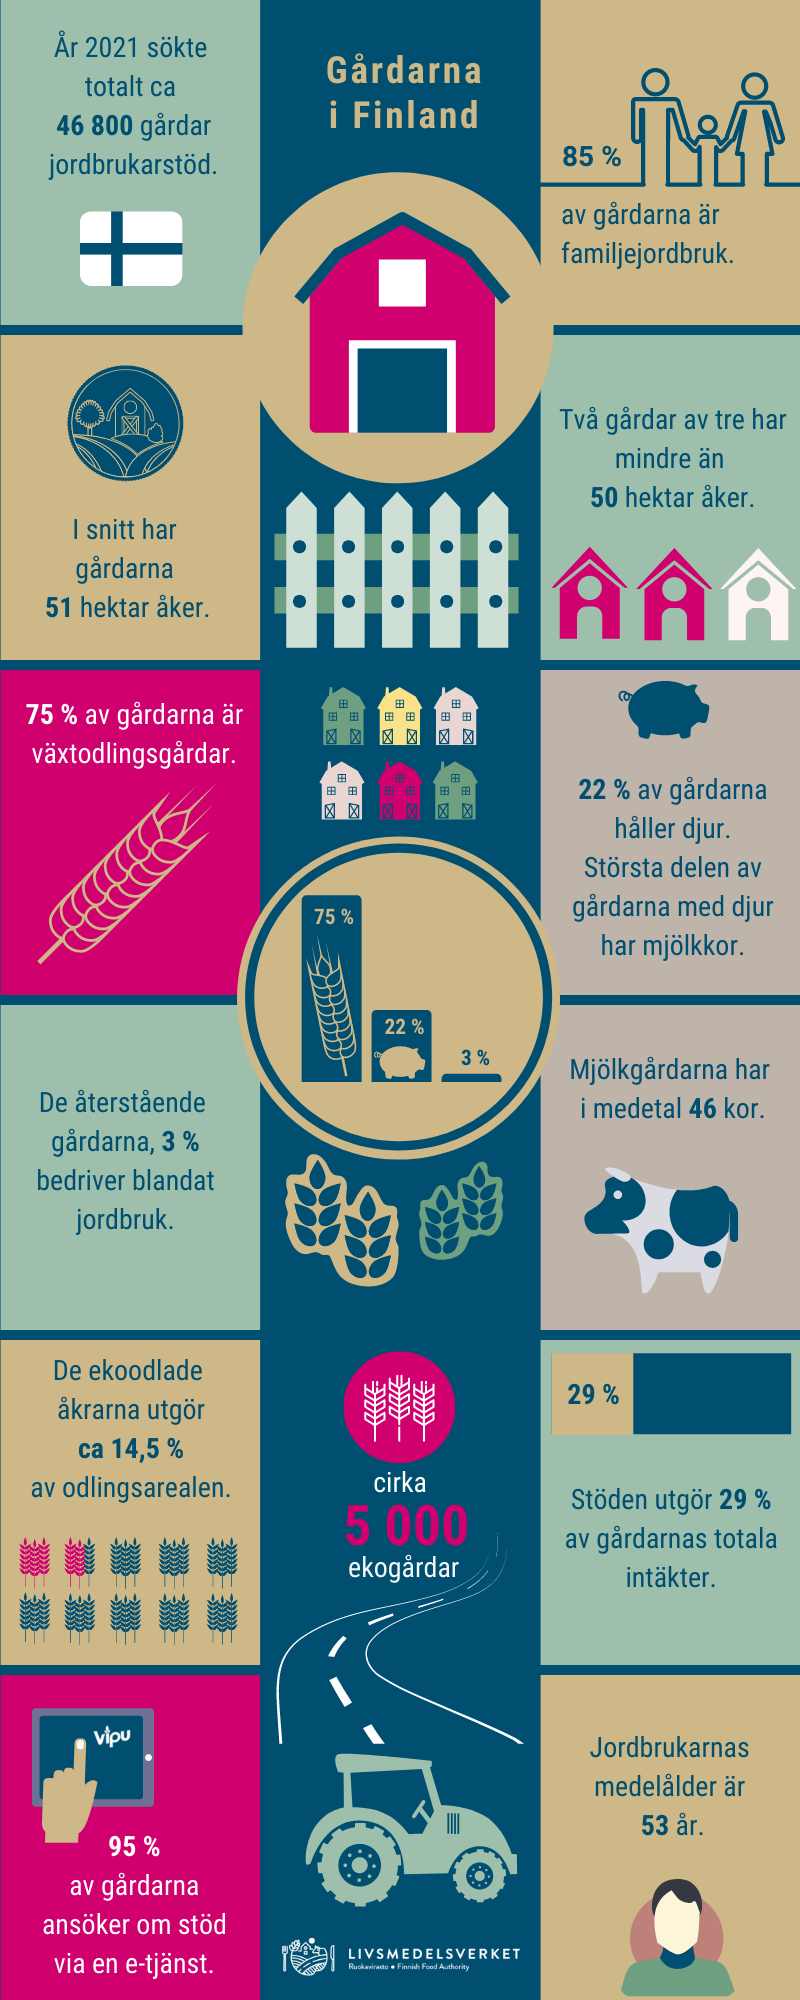 Den finländska gården -infografik. Infografikens texter finns nedanför infografiken.